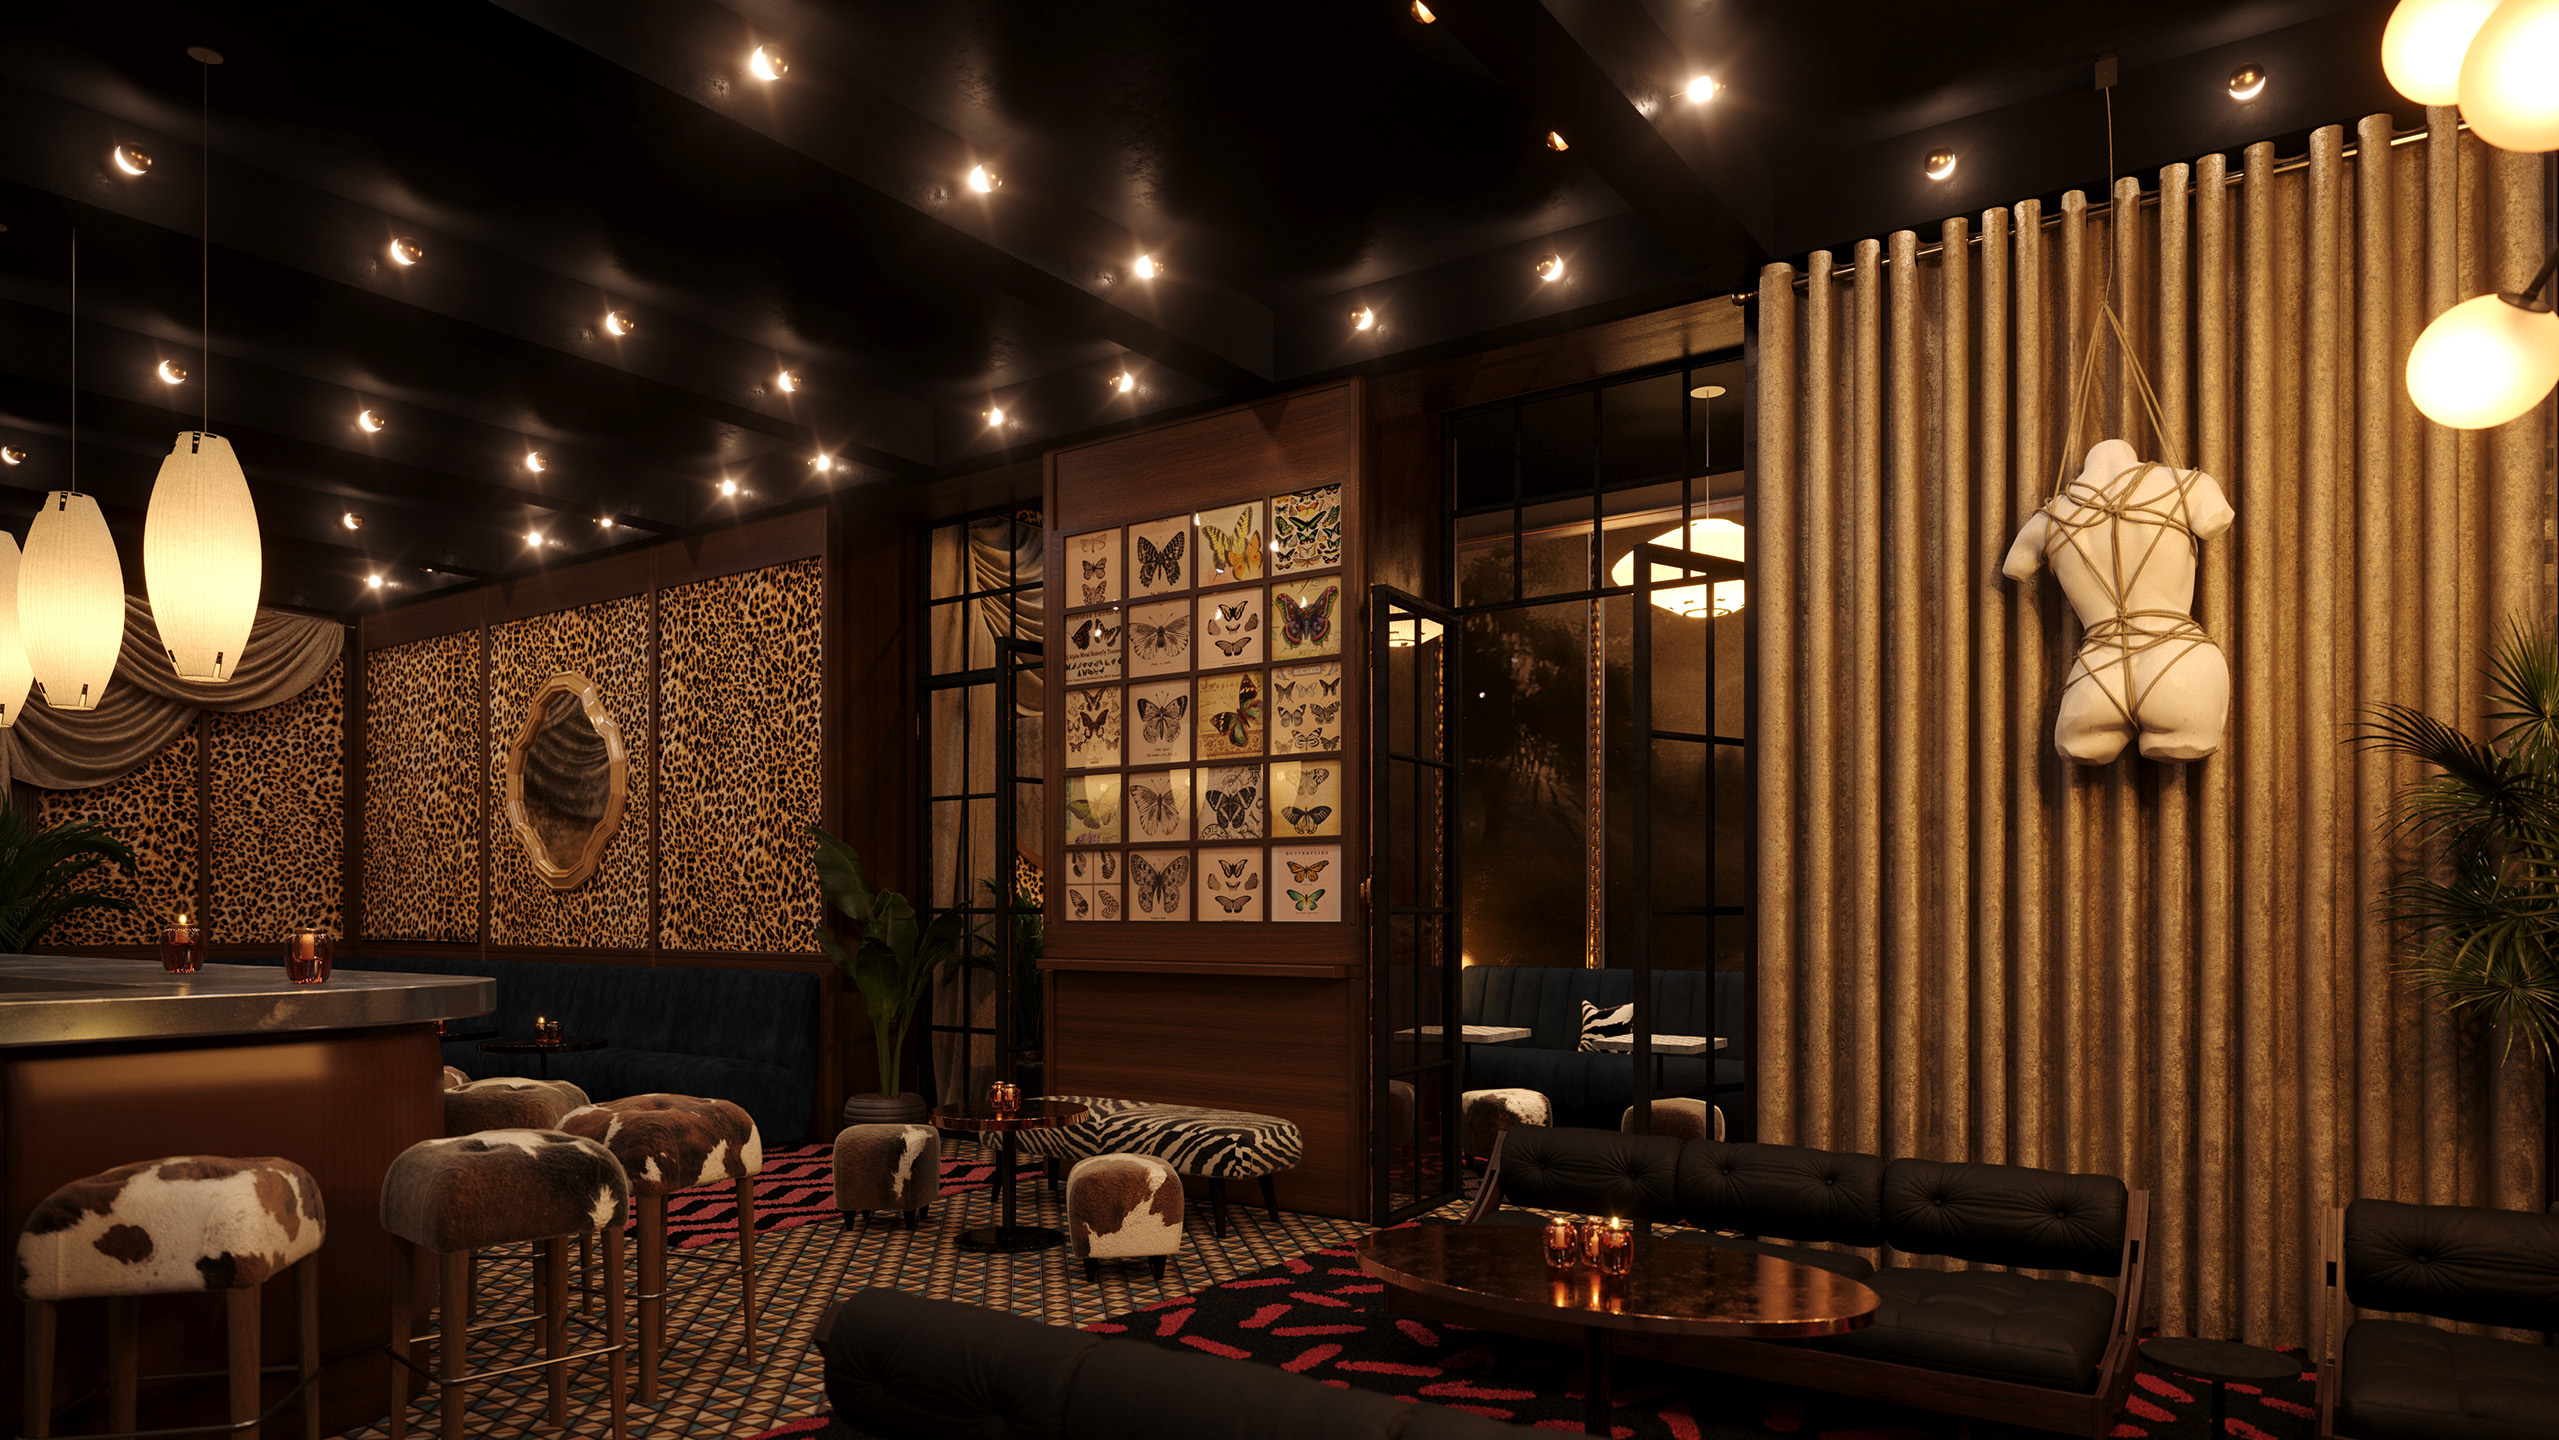 Image de synthèse intérieure 3D de haute qualité d'un restaurant avec des détails kitsch tels qu'un manequin bondagé, des finitions léopard et des banqyettes en peau de vache